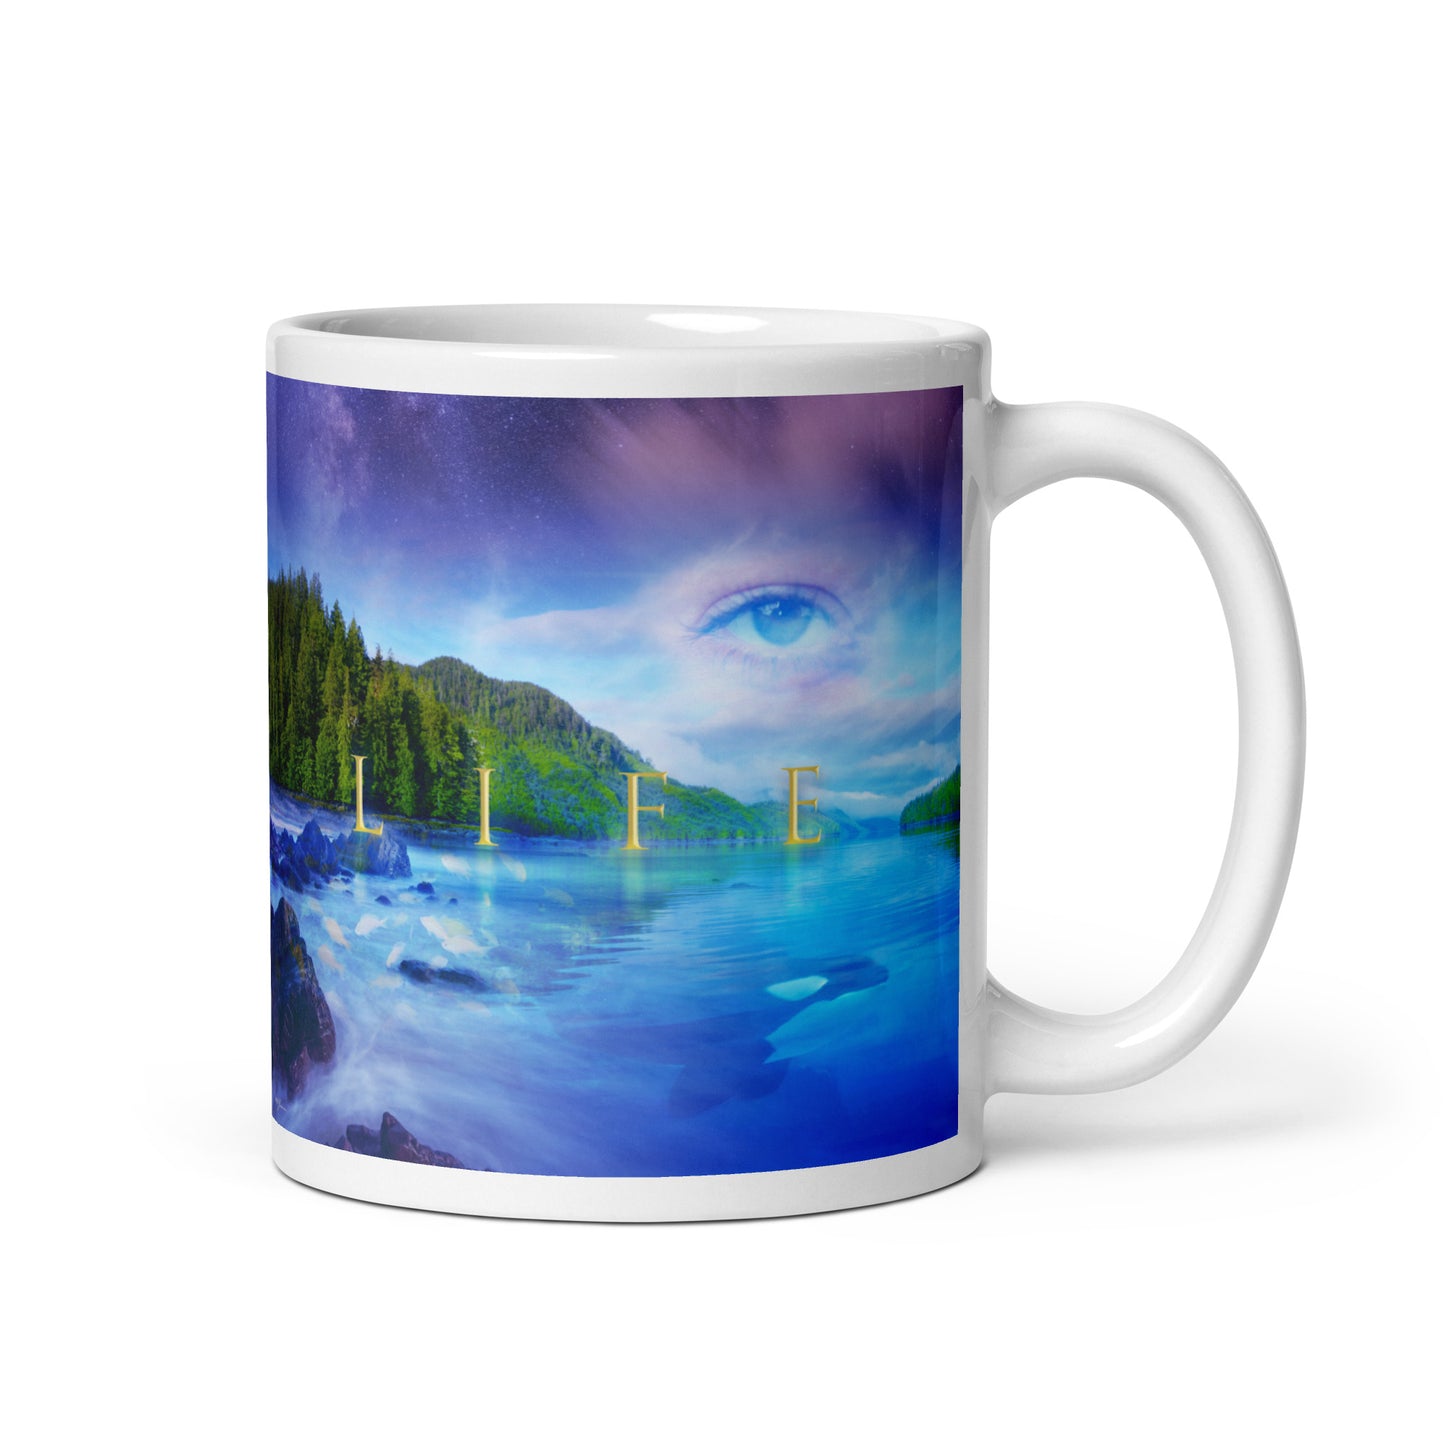 Life Landscape - White glossy mug